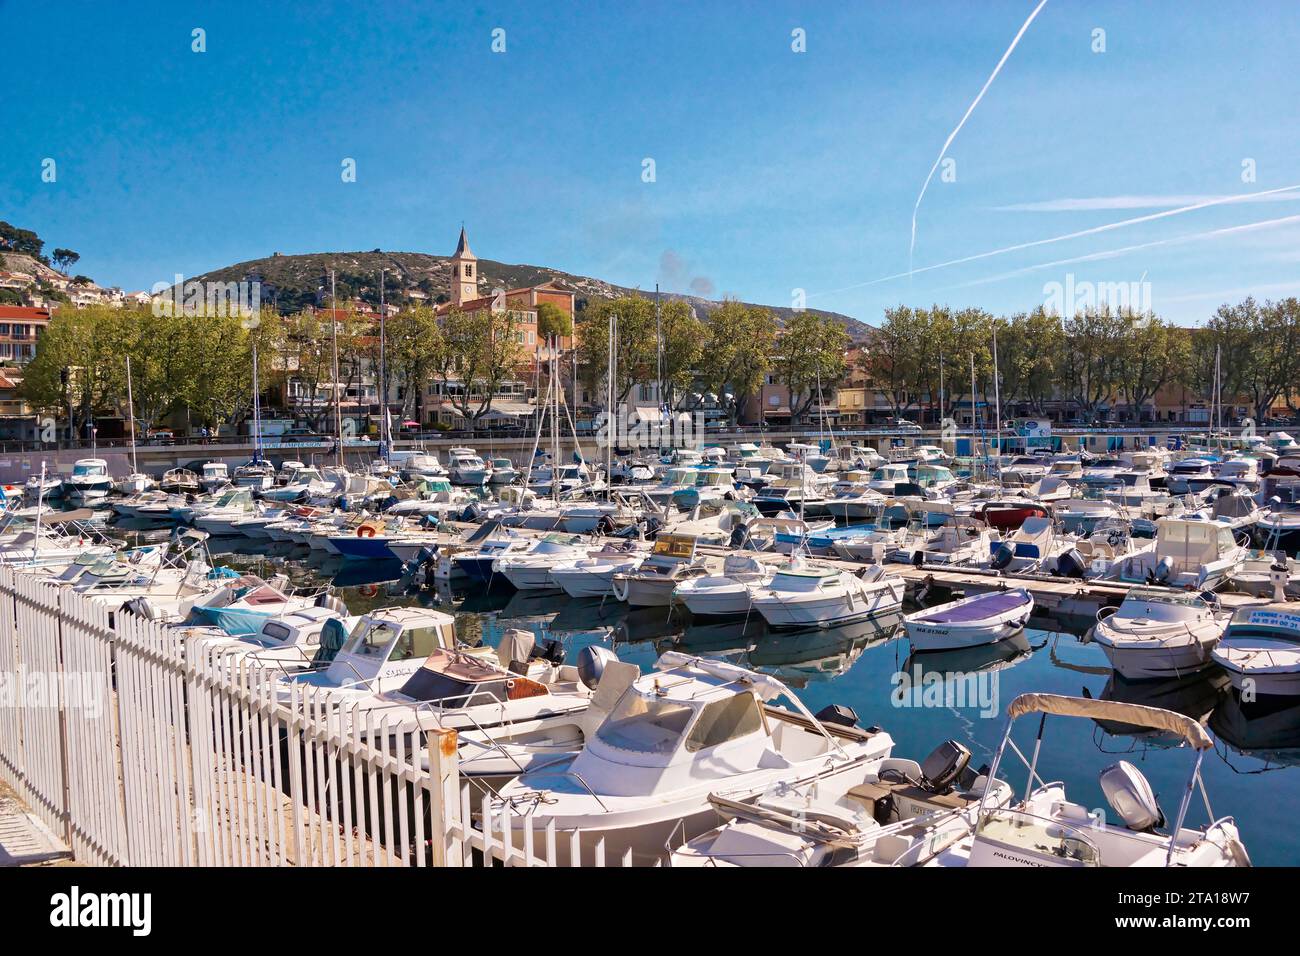 série de photographies sur le petit Port de pêche de l’Estaque, un quartier du nord de Marseille Stockfoto